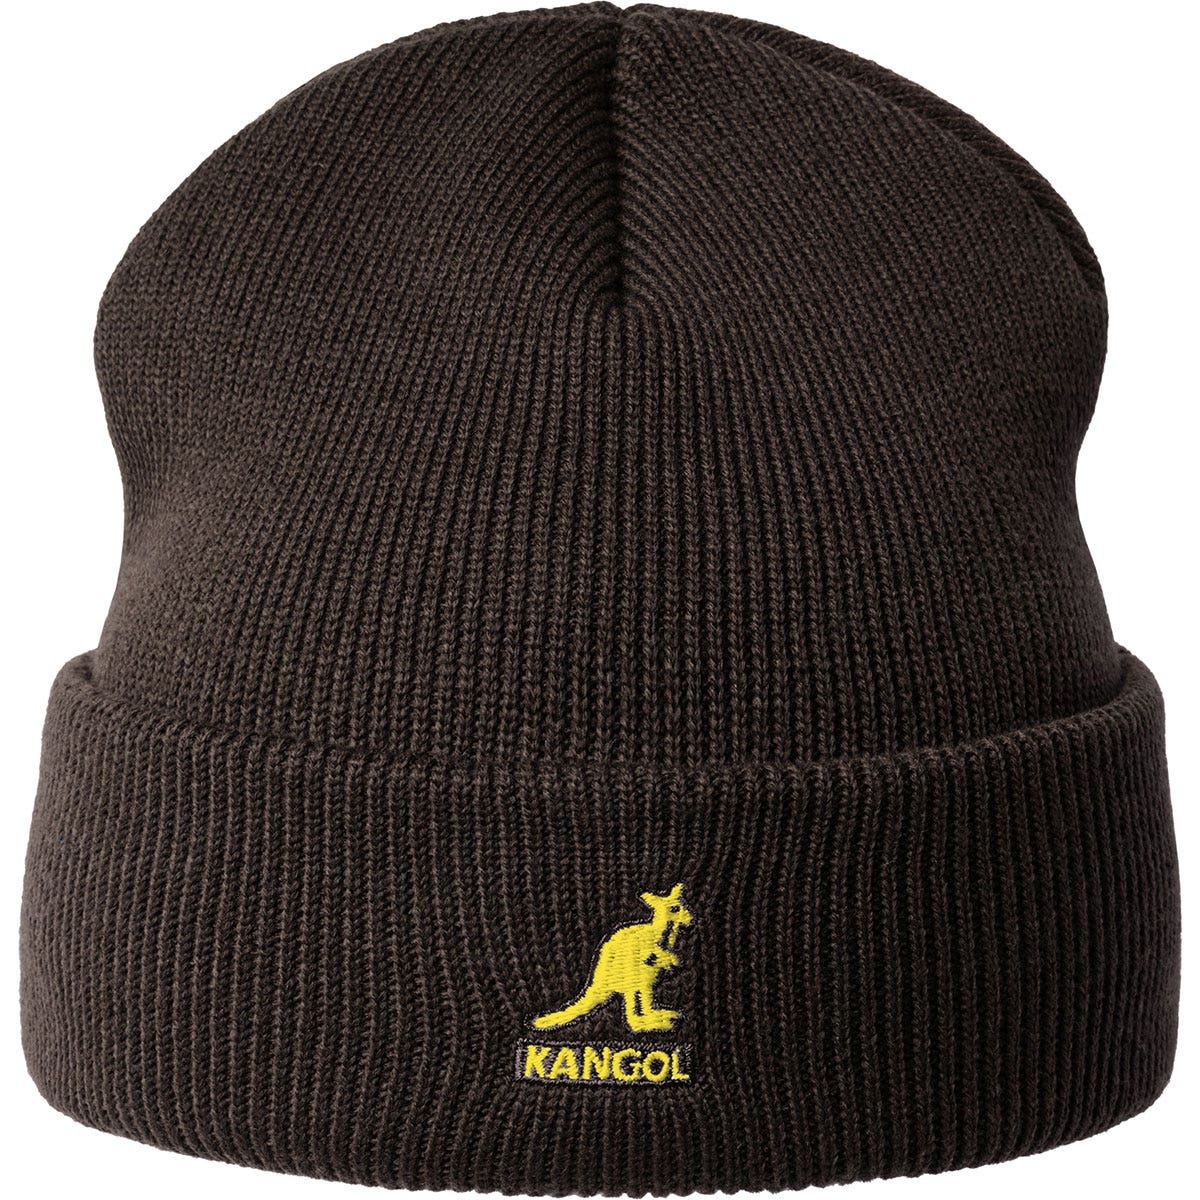 bonnet kangol acrylic pull-on